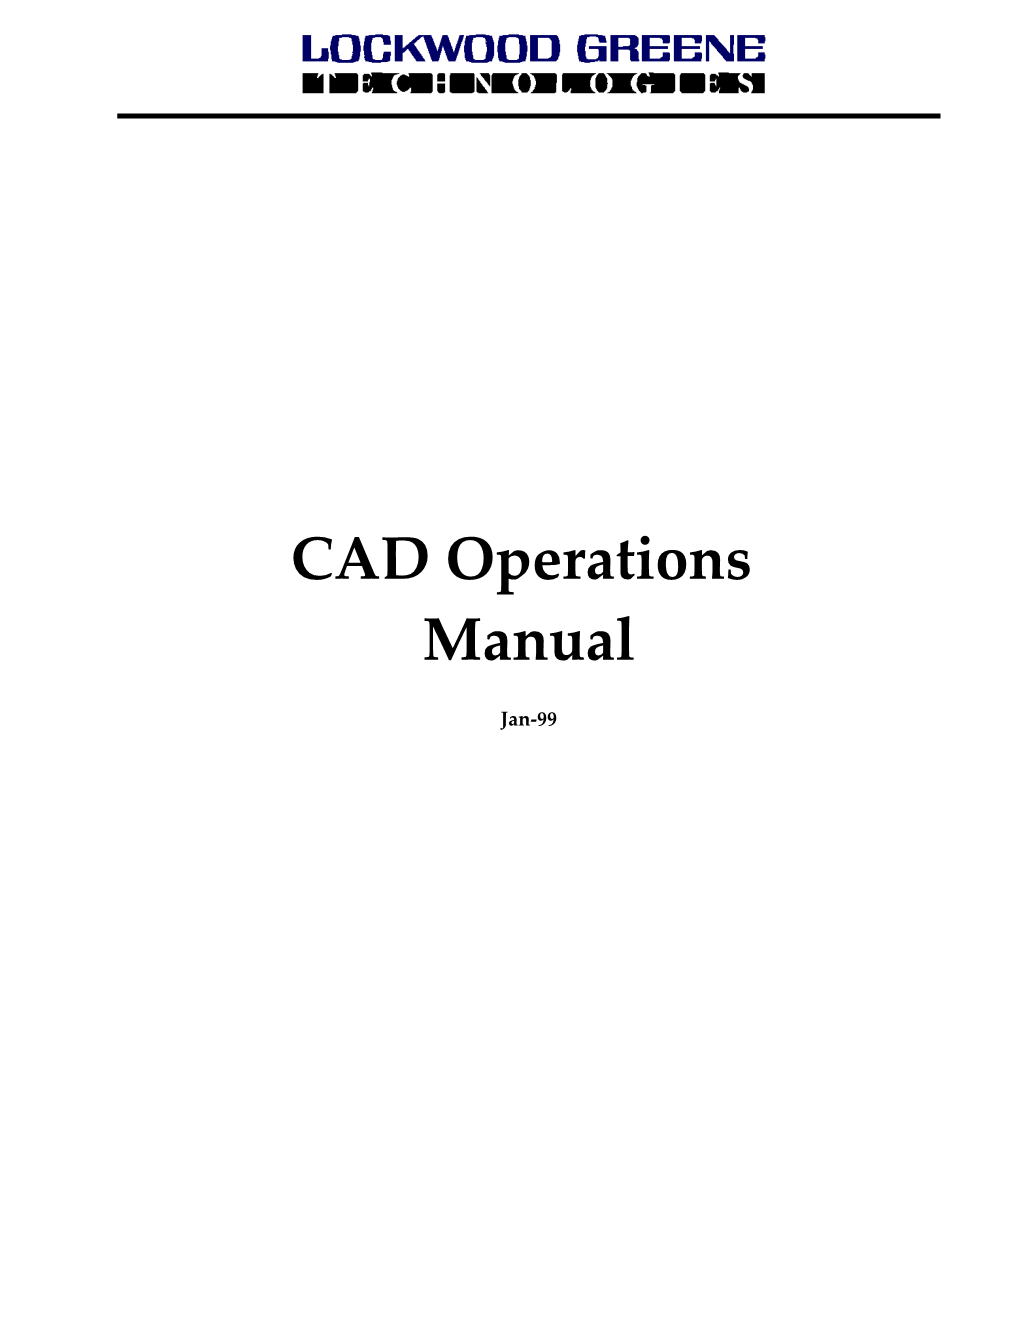 CAD Procedure Manual